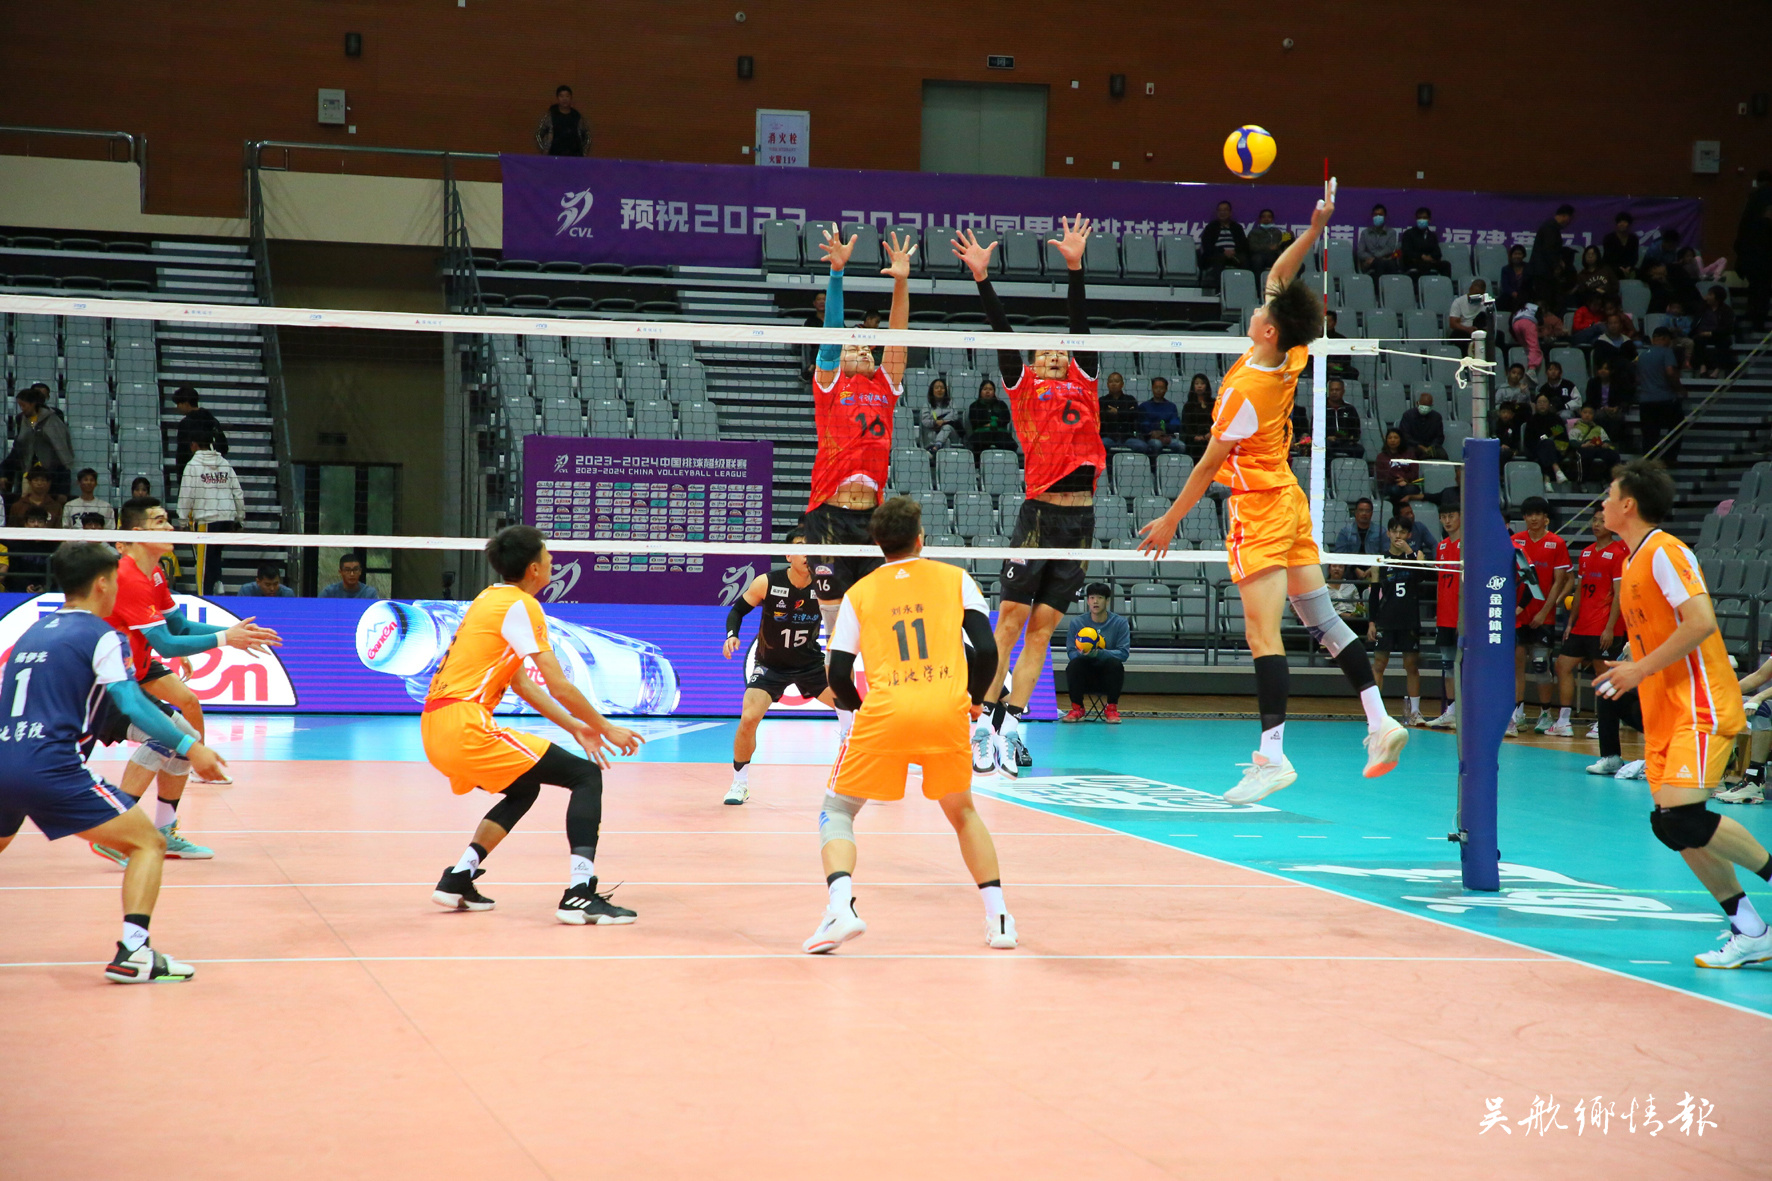 2023-2024中国男子排球超级联赛在福建省体育局长乐滨海体育中心进行